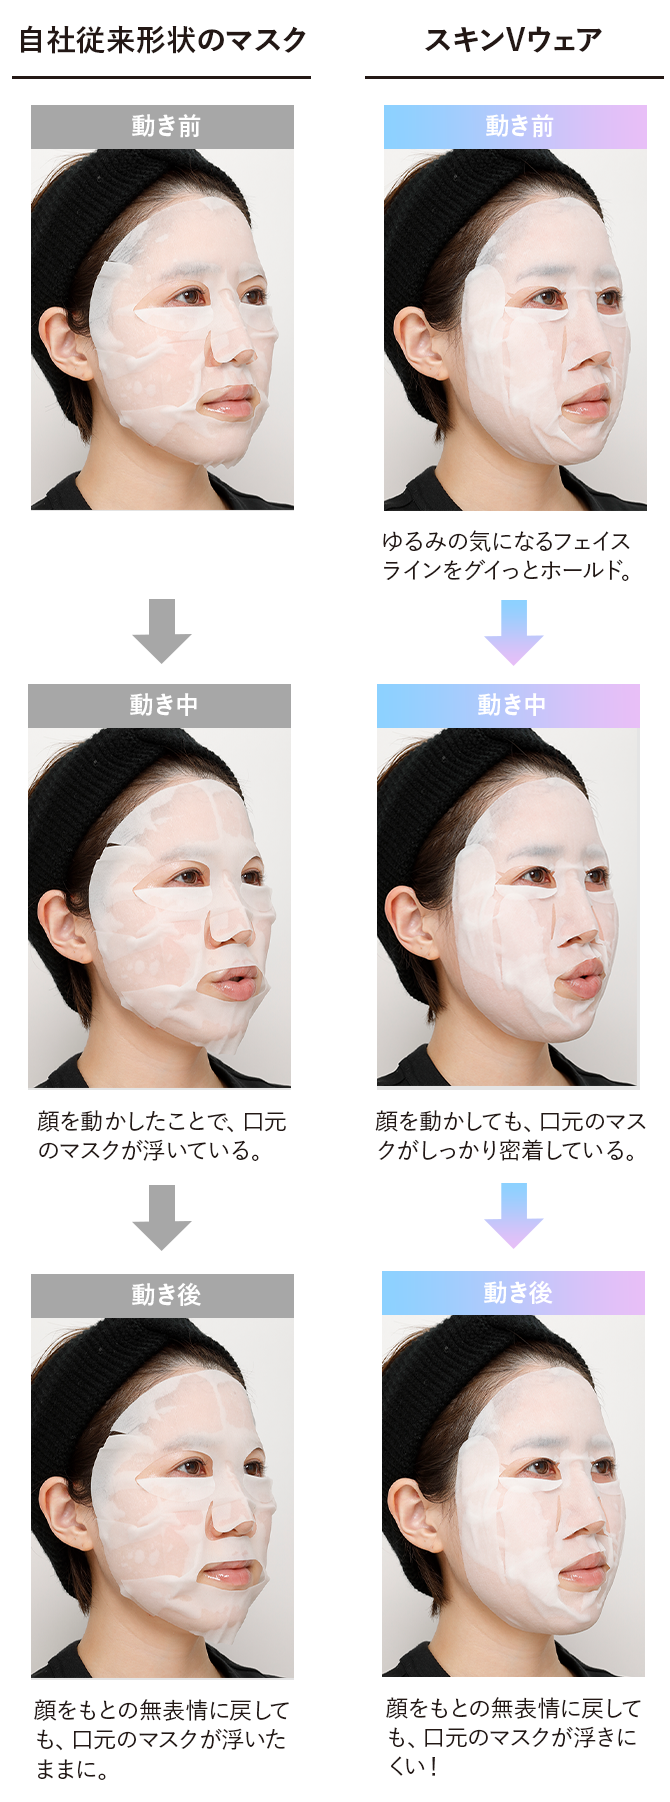 自社従来形状のマスク 動き前→動き中 顔を動かしたことで、口元のマスクが浮いている。→動き後 顔をもとの無表情に戻しても、口元のマスクが浮いたままに。/スキンVウェア 動き前 ゆるみの気になるフェイスラインをグイッとホールド。→動き中 顔を動かしても、口元のマスクがしっかり密着している。→動き後 顔をもとの無表情に戻しても、口元のマスクが浮きにくい！